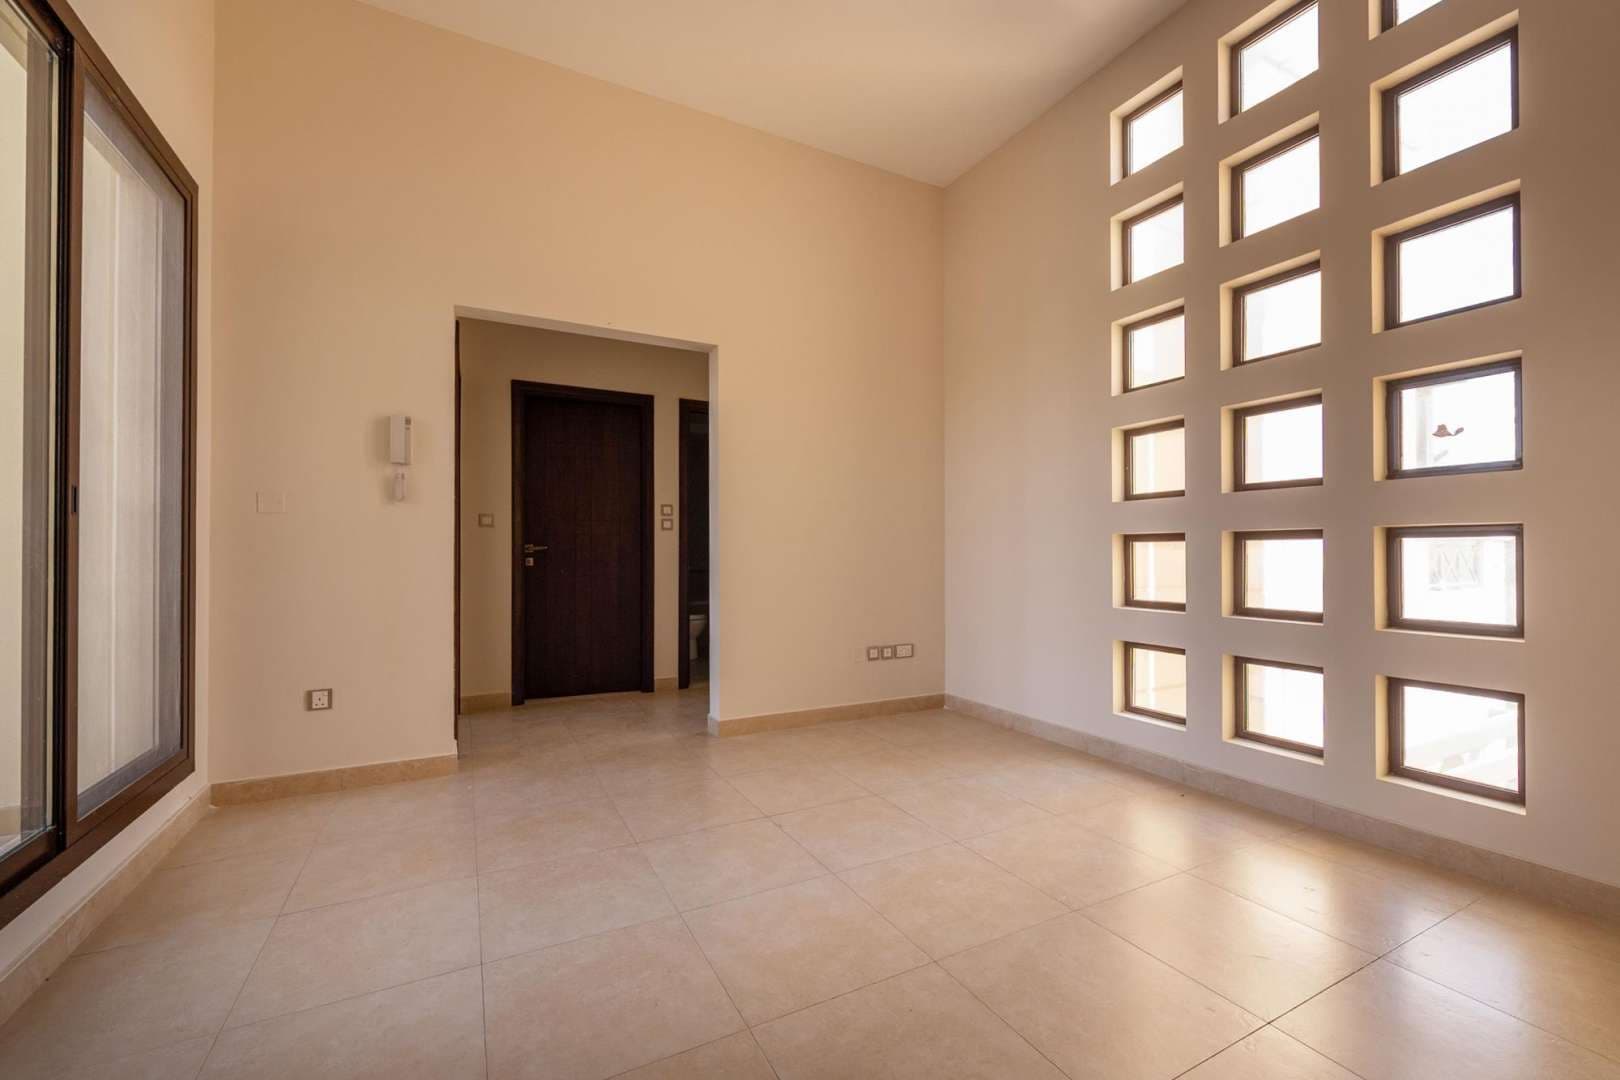 4 Bedroom Townhouse For Rent Al Salam Lp05520 1b41d2d89c3e1900.jpg